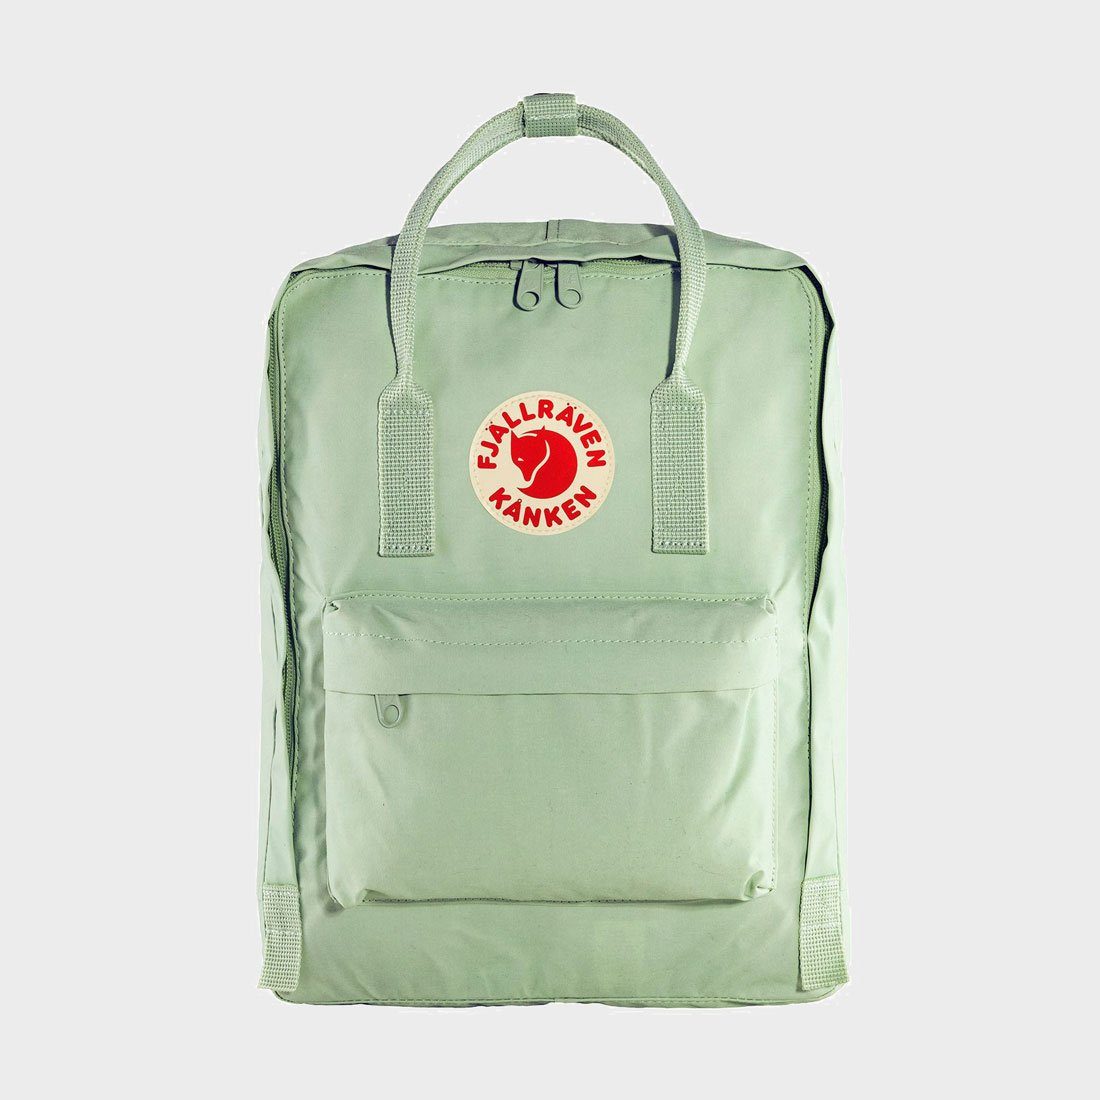 fjallraven kanken backpack sale instagram